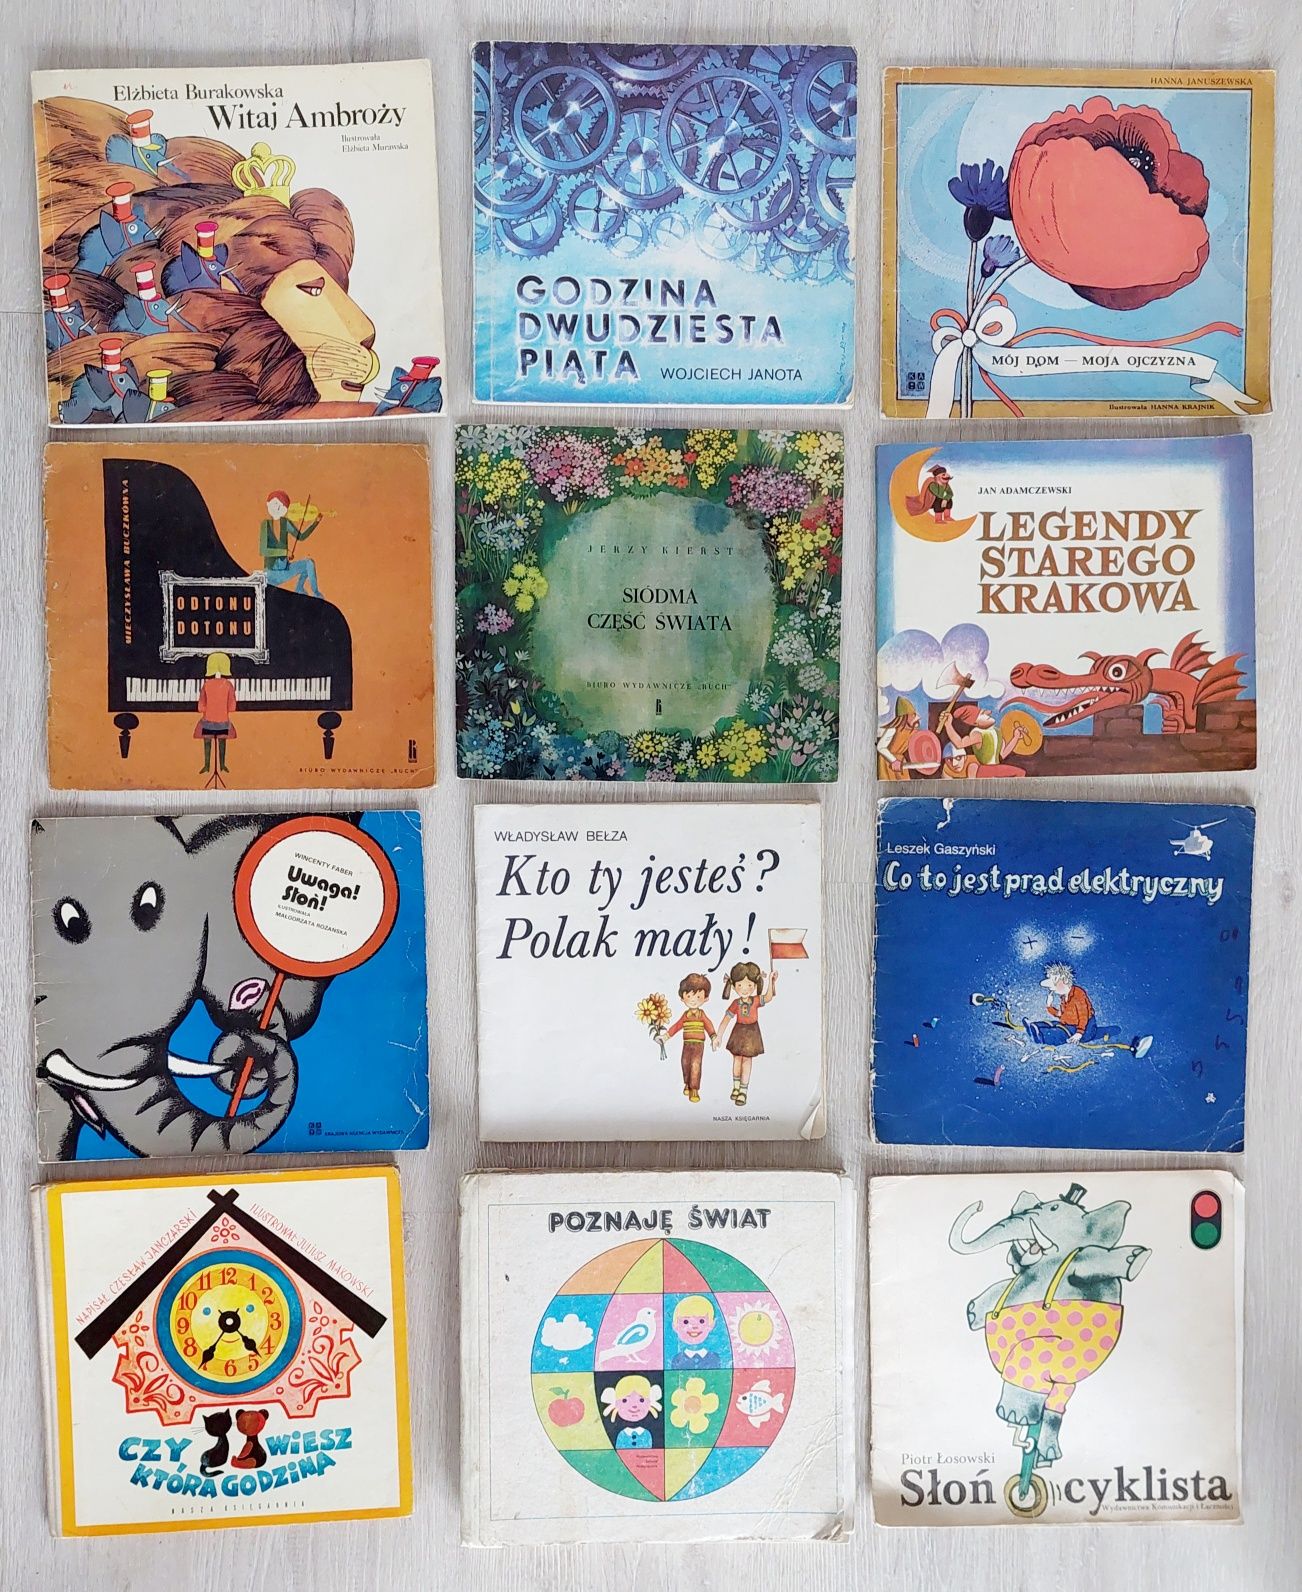 155 sztuk starych książek dla dzieci, głównie lata 70te, 80te,